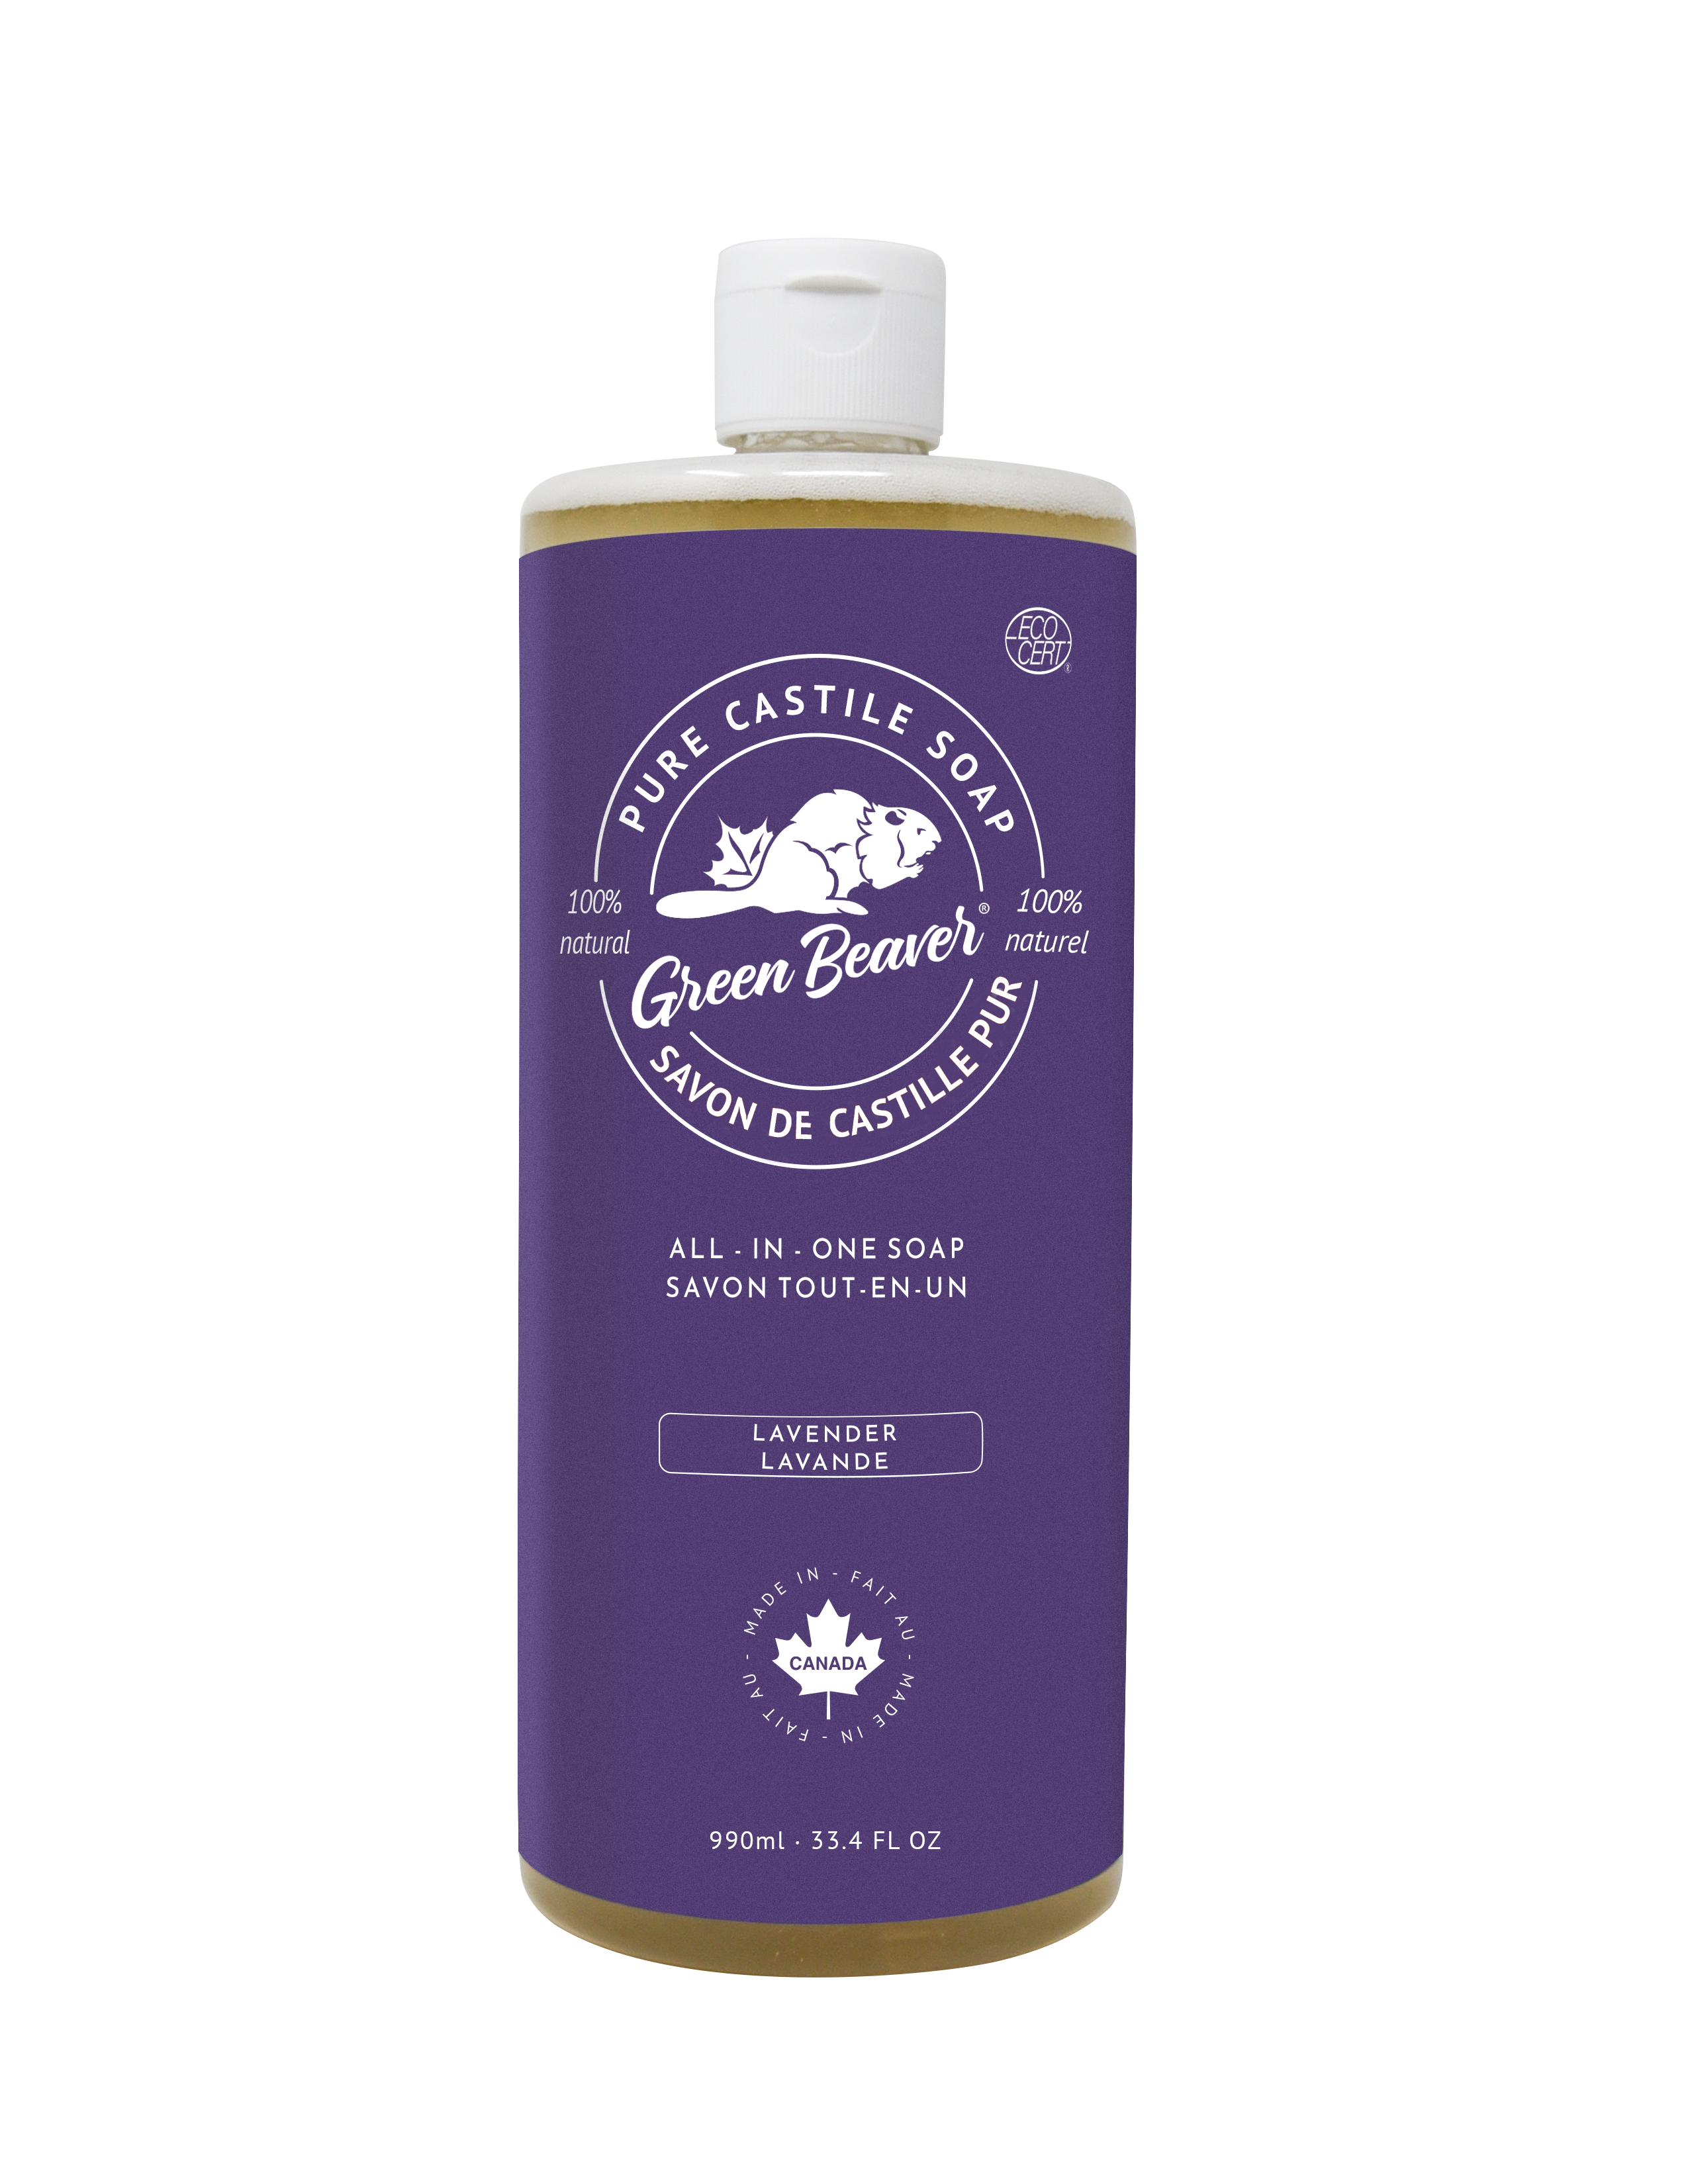 A bottle of Green Beaver's Lavender Castile Soap